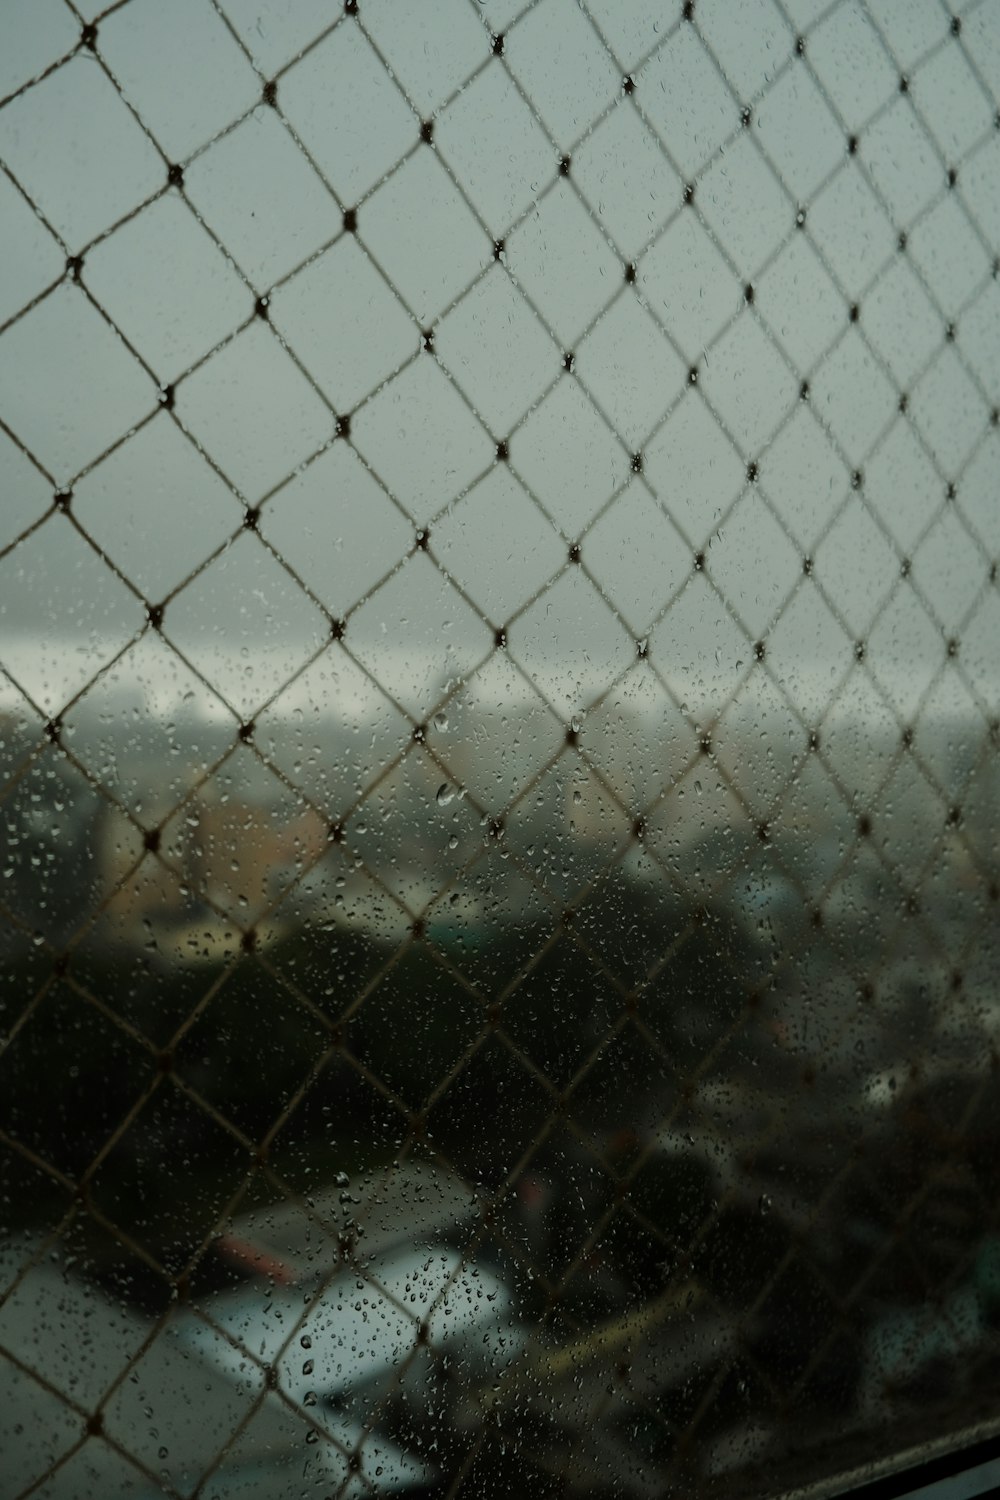 une vue d’une ville à travers une clôture à mailles losangées